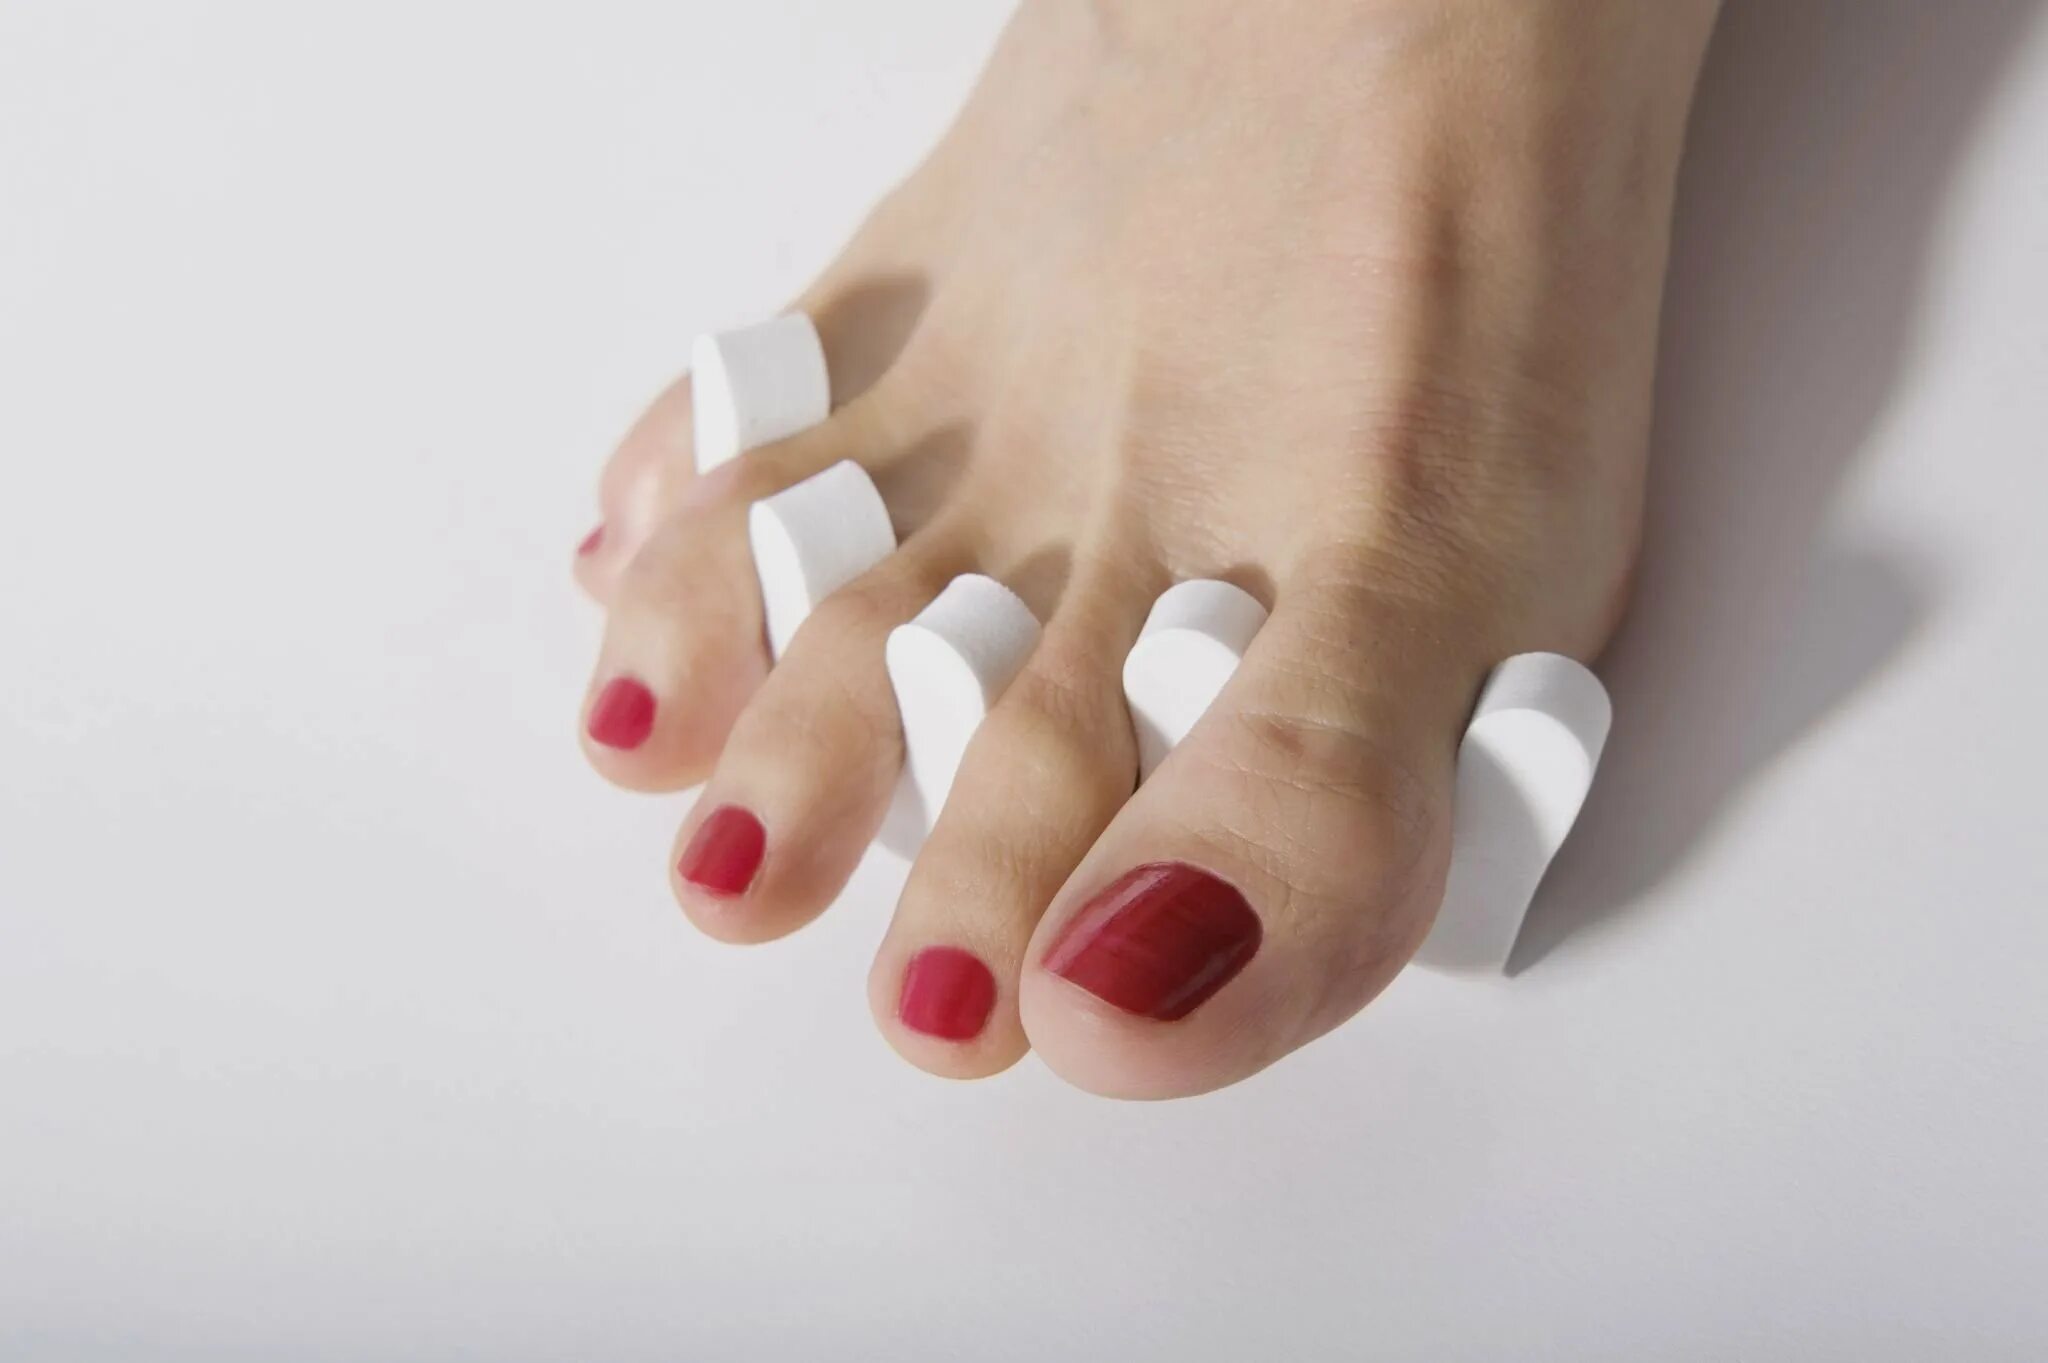 Педикюр грибковых ногтей. Ногти на ногах. Накрашенные ногти на ногах. Педикюр без покрытия. Женские ногти на ногах.